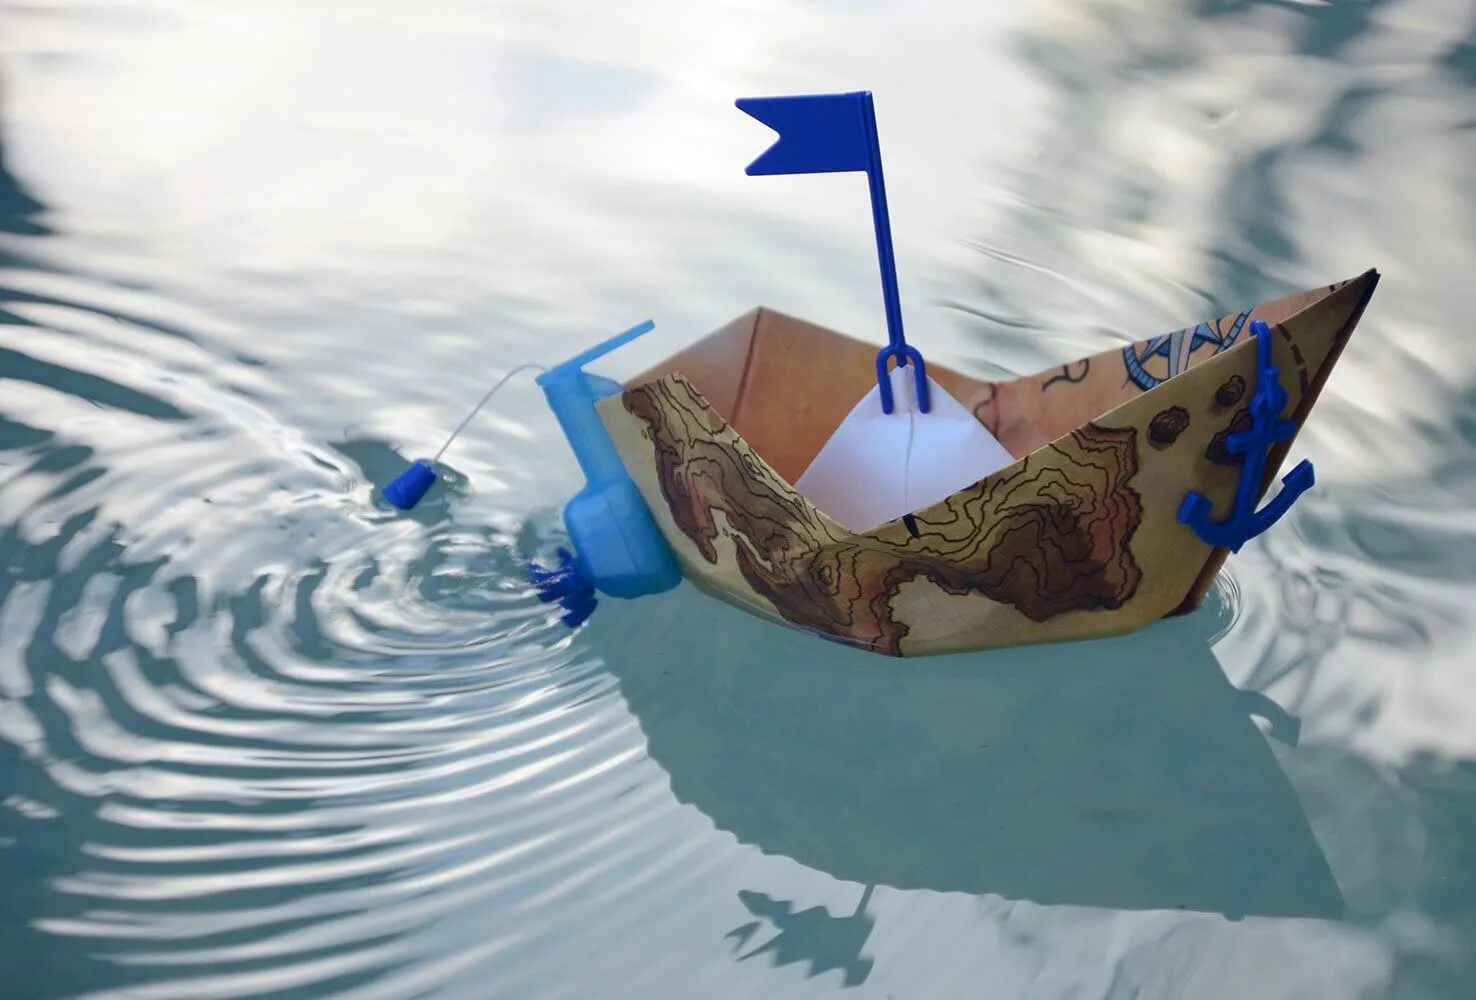 Кораблик из бумаги я по ручью. Бумажный кораблик. Бумажный кораблик в ручейке. Кораблик плывет.